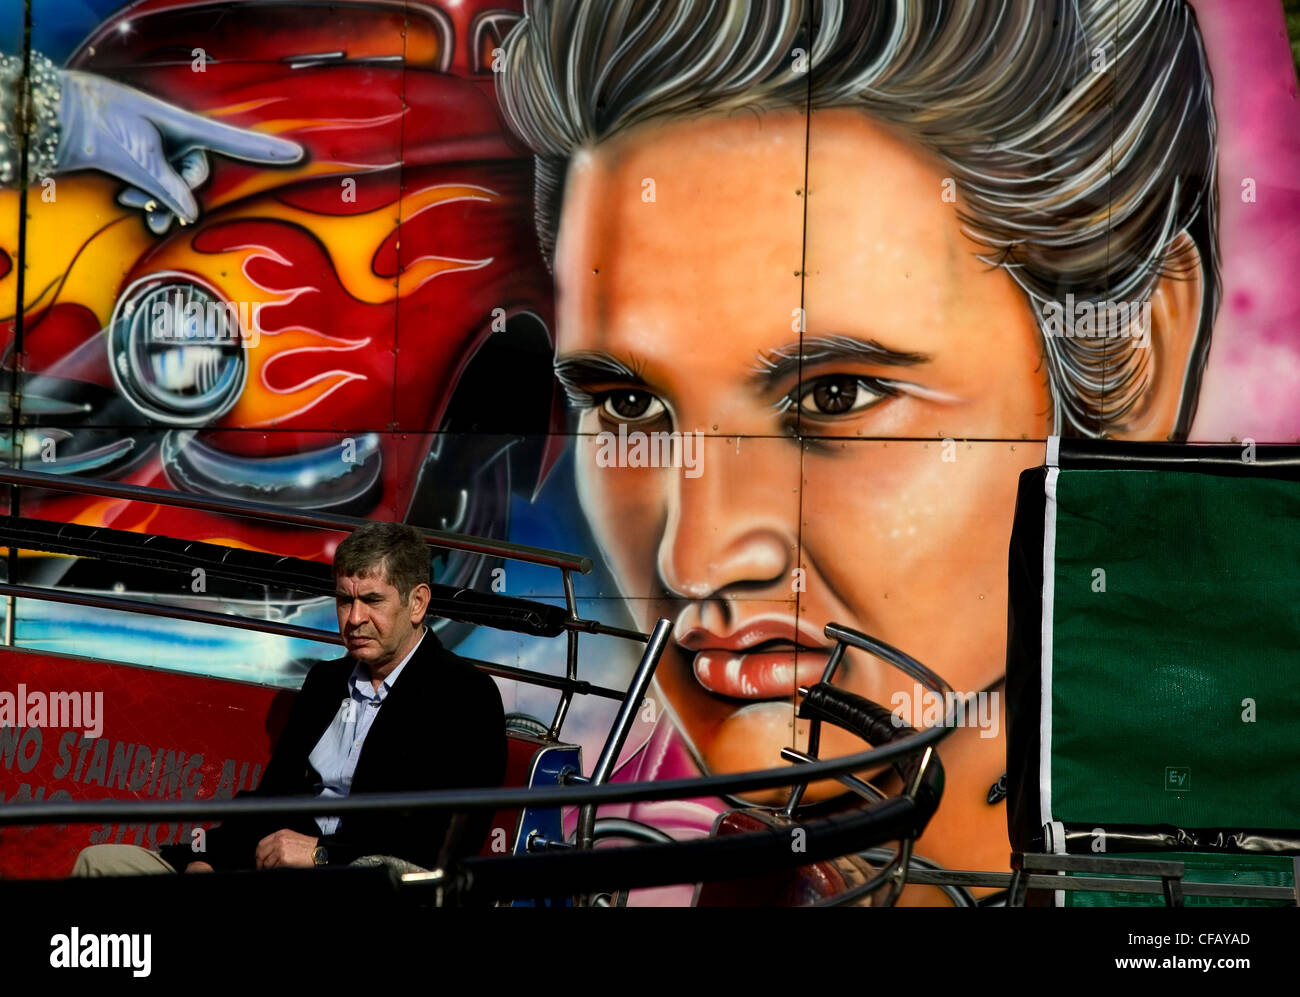 Fiera su Hampstead Heath, a Londra. Uomo si siede sul banco di prova nella parte anteriore della carta murale con la faccia di Elvis Presley e auto Foto Stock